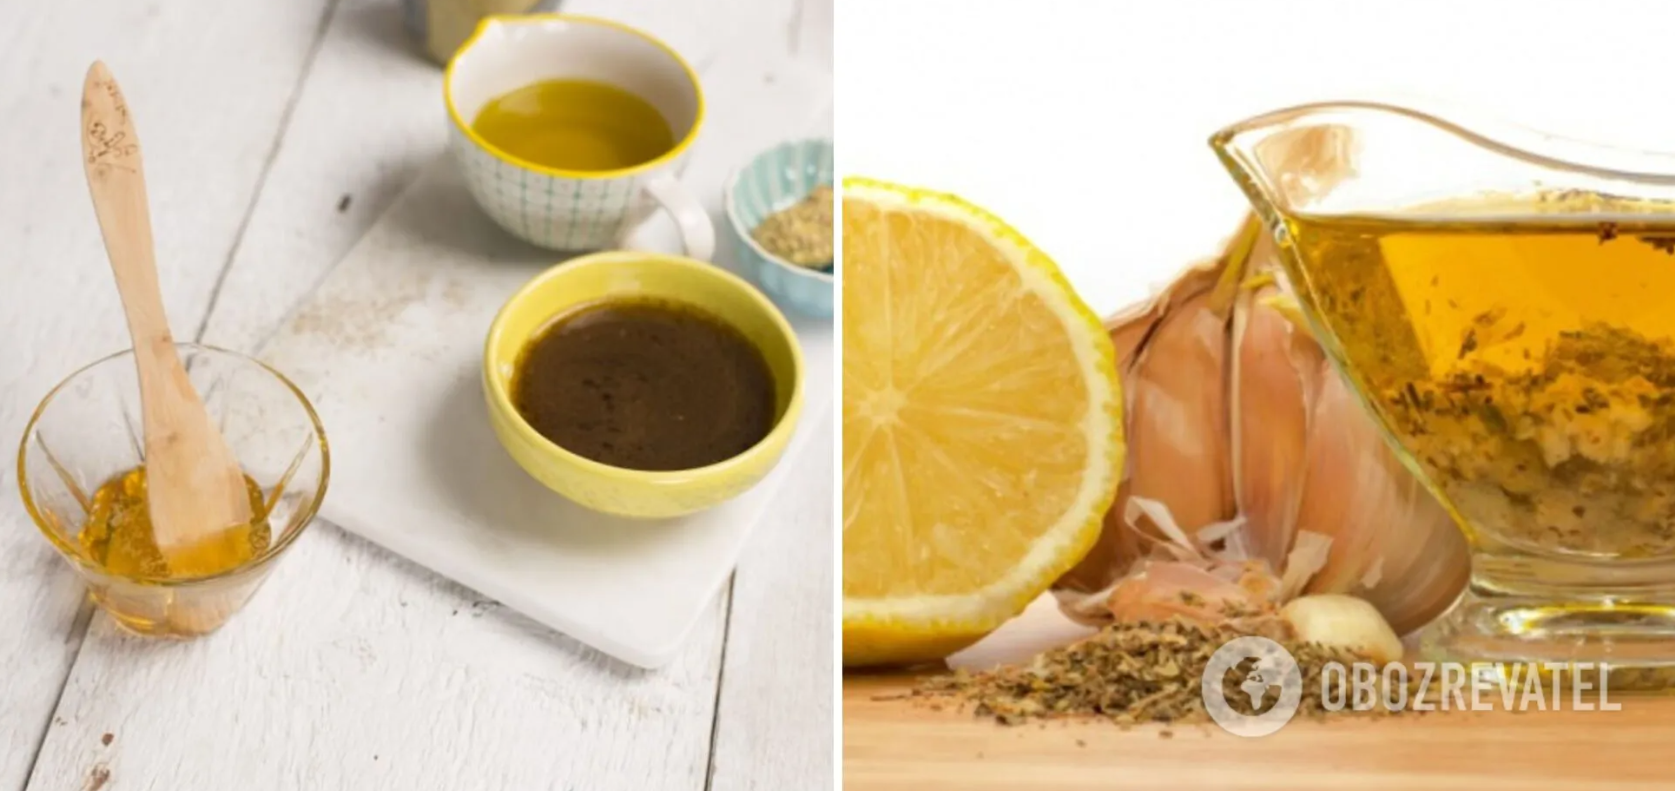 Заправка к салату с медом и лимонным соком